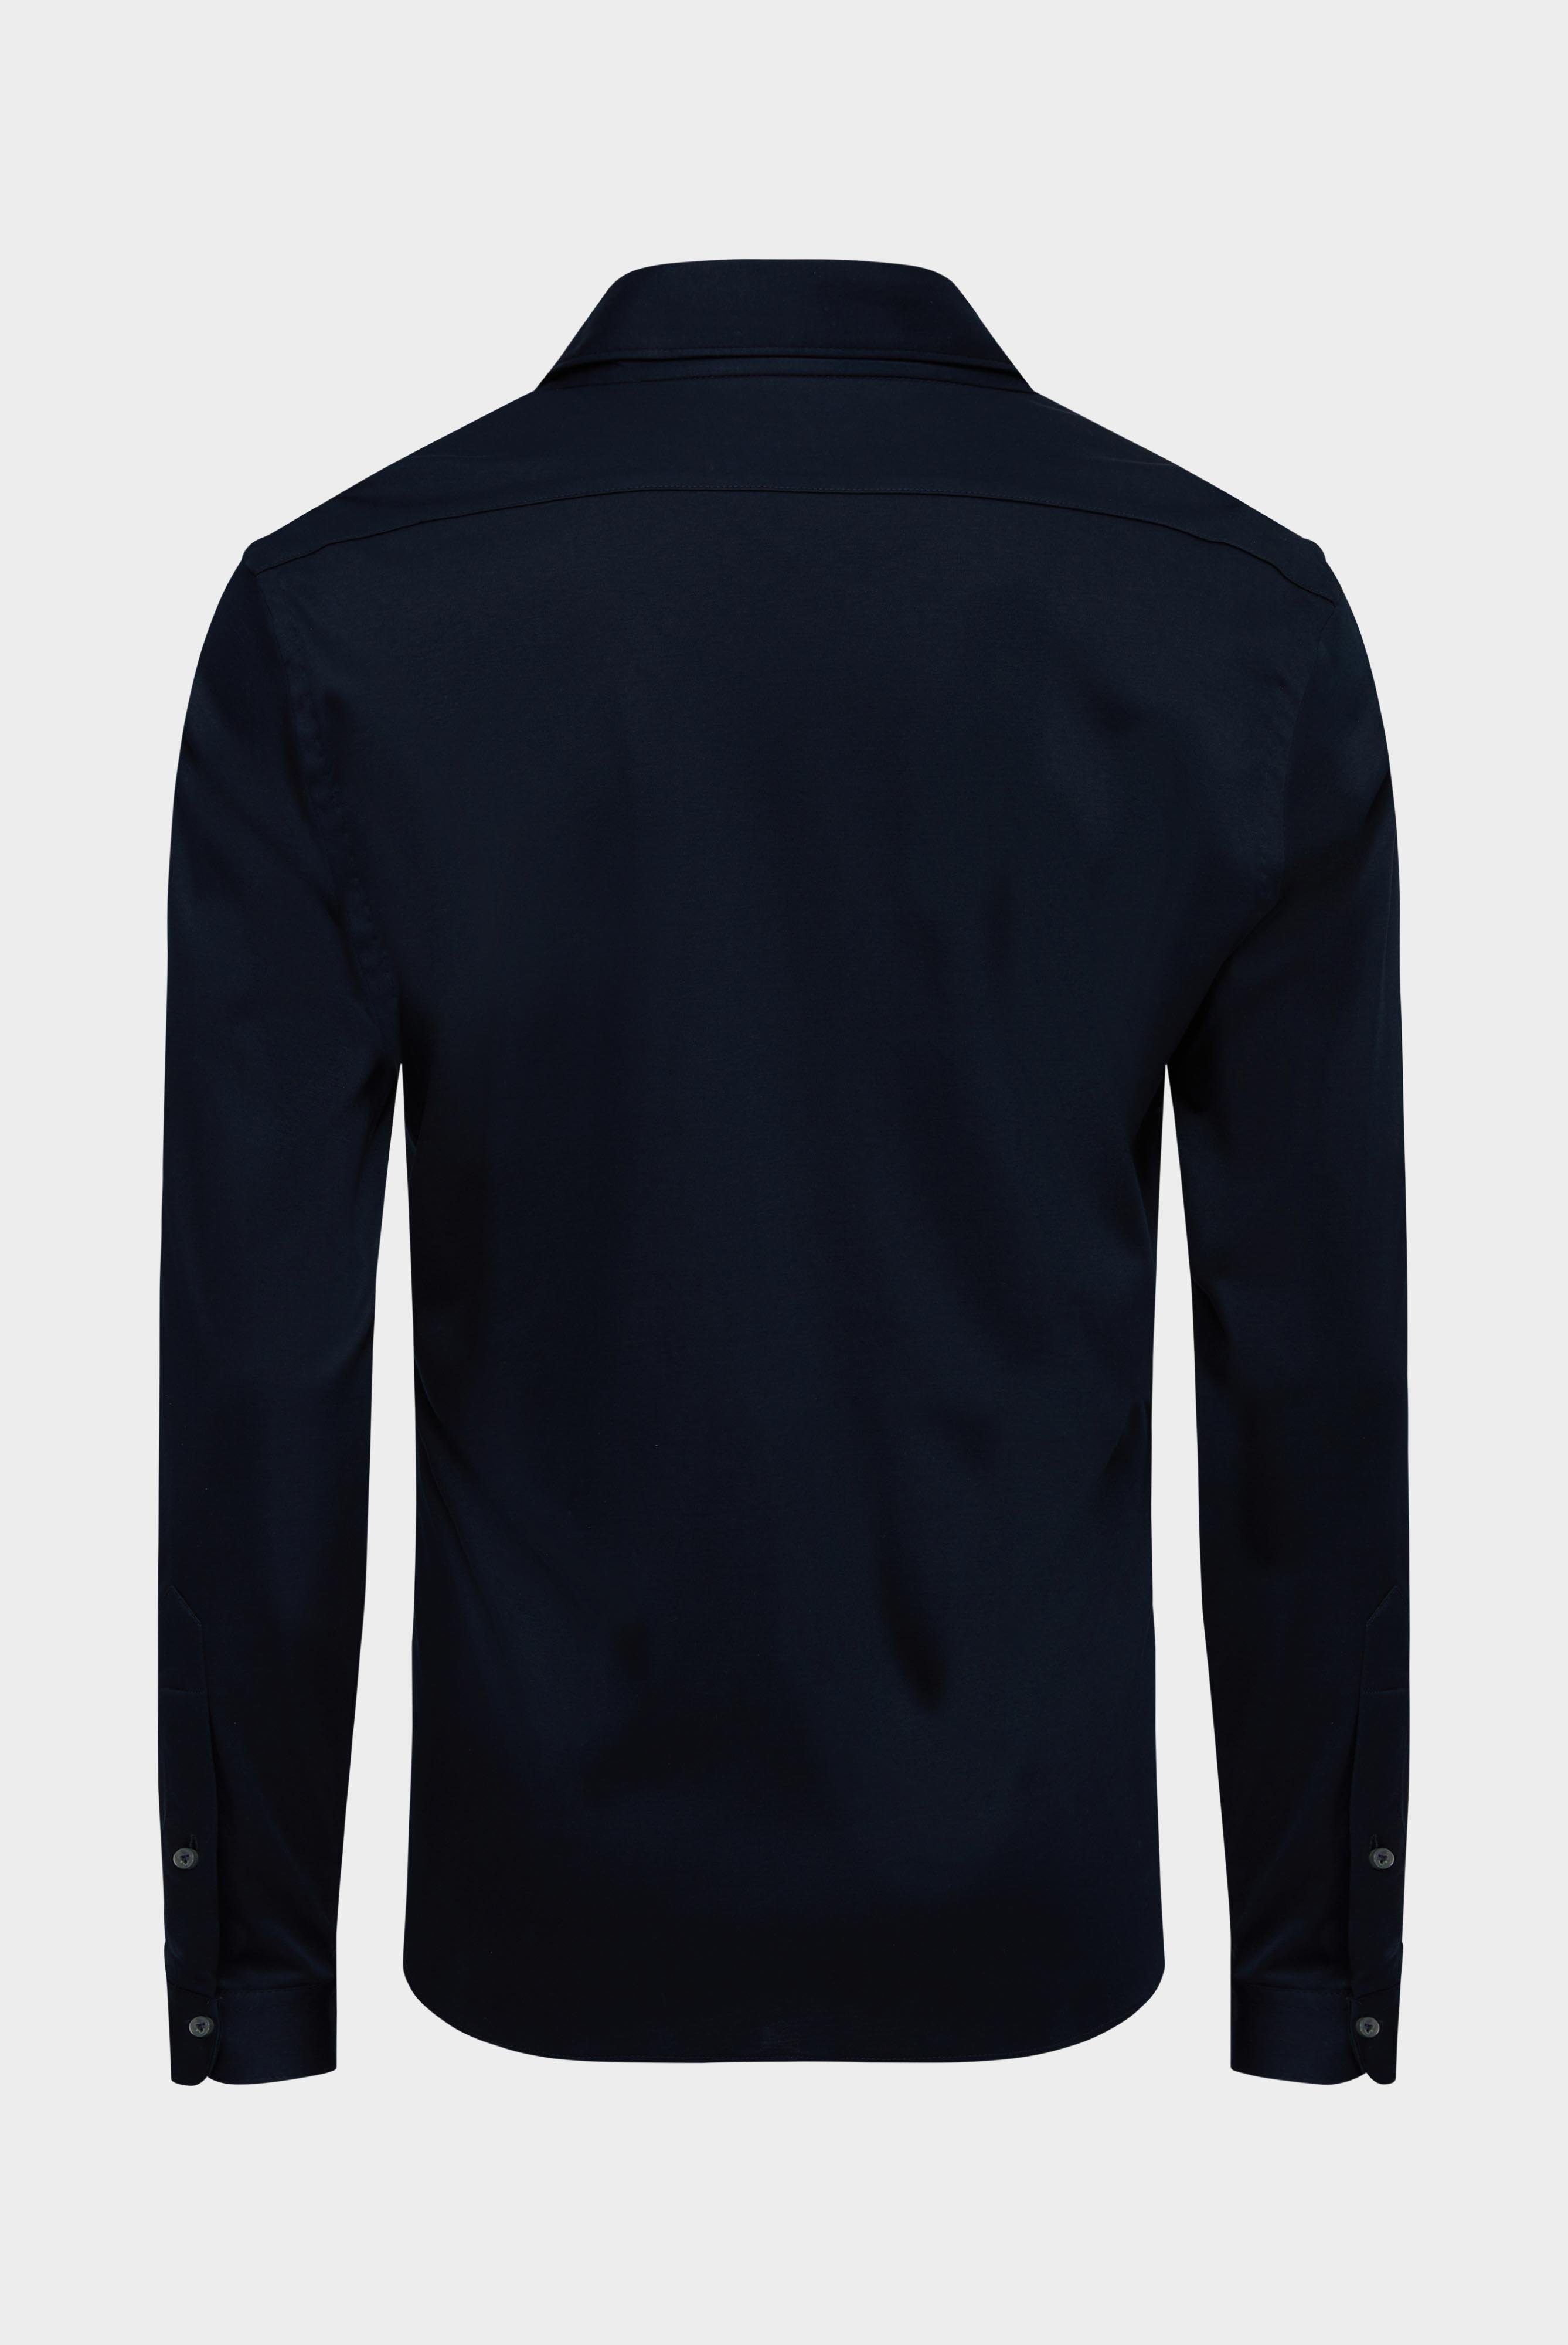 Bügelleichte Hemden+Jersey Hemd mit glänzender Optik Tailor Fit+20.1683.UC.180031.790.X3L